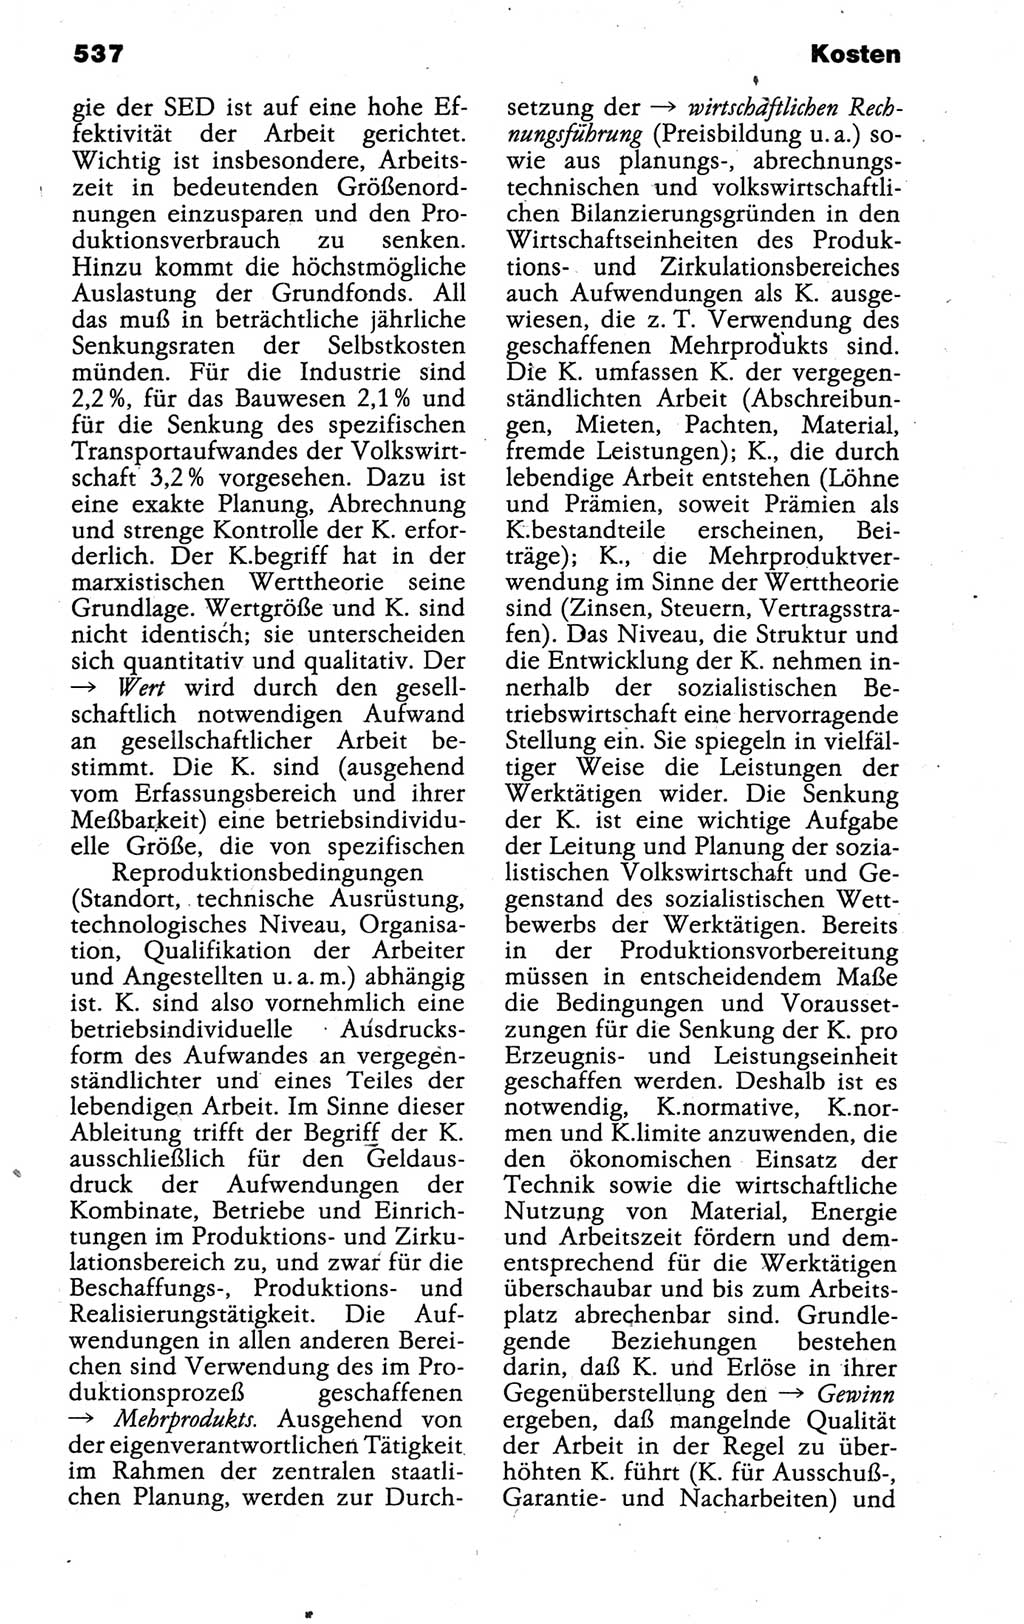 Kleines politisches Wörterbuch [Deutsche Demokratische Republik (DDR)] 1988, Seite 537 (Kl. pol. Wb. DDR 1988, S. 537)